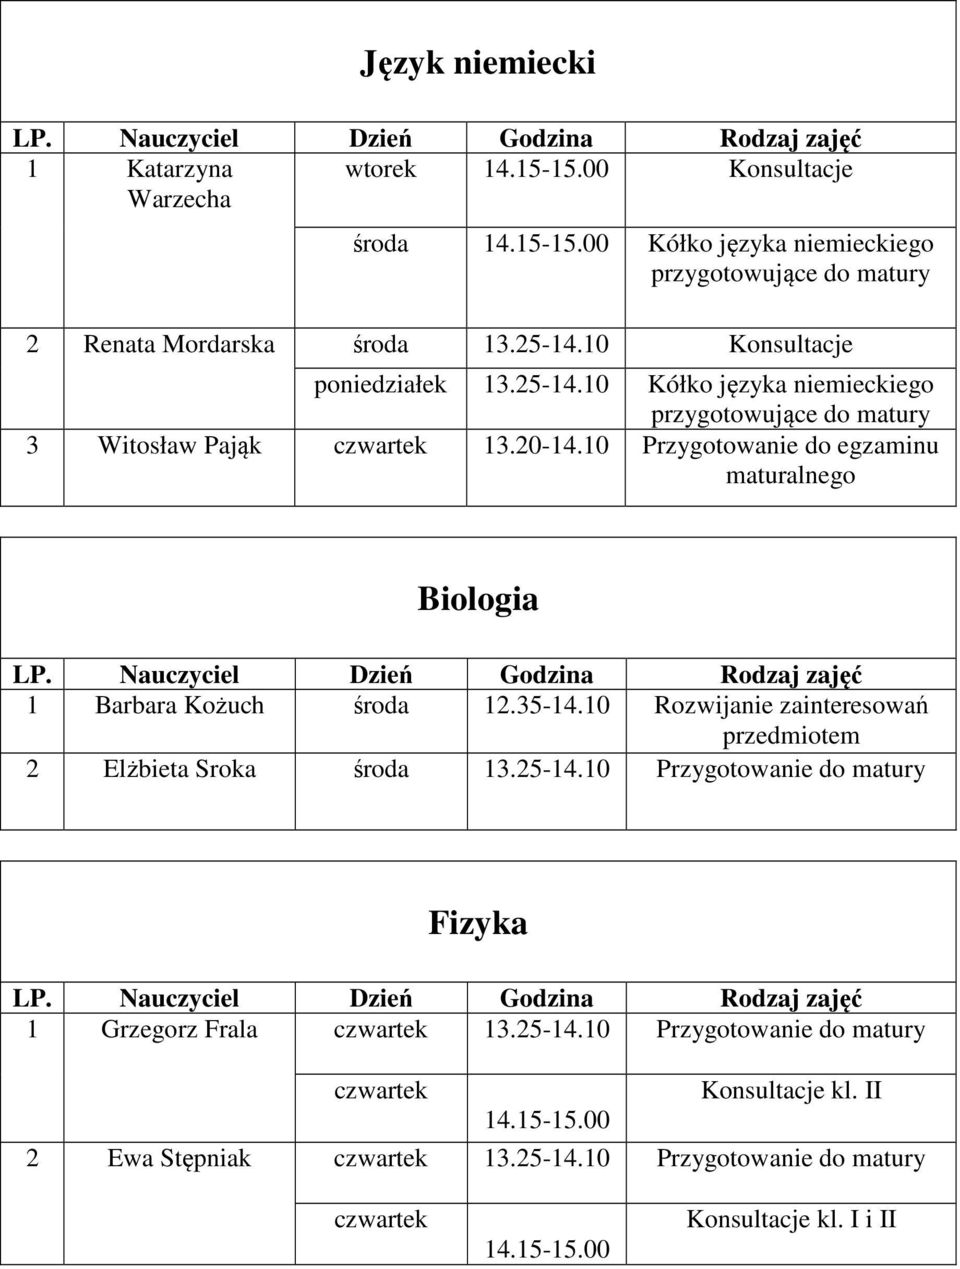 10 Przygotowanie do egzaminu maturalnego Biologia 1 Barbara Kożuch środa 12.35-14.10 Rozwijanie zainteresowań przedmiotem 2 Elżbieta Sroka środa 13.